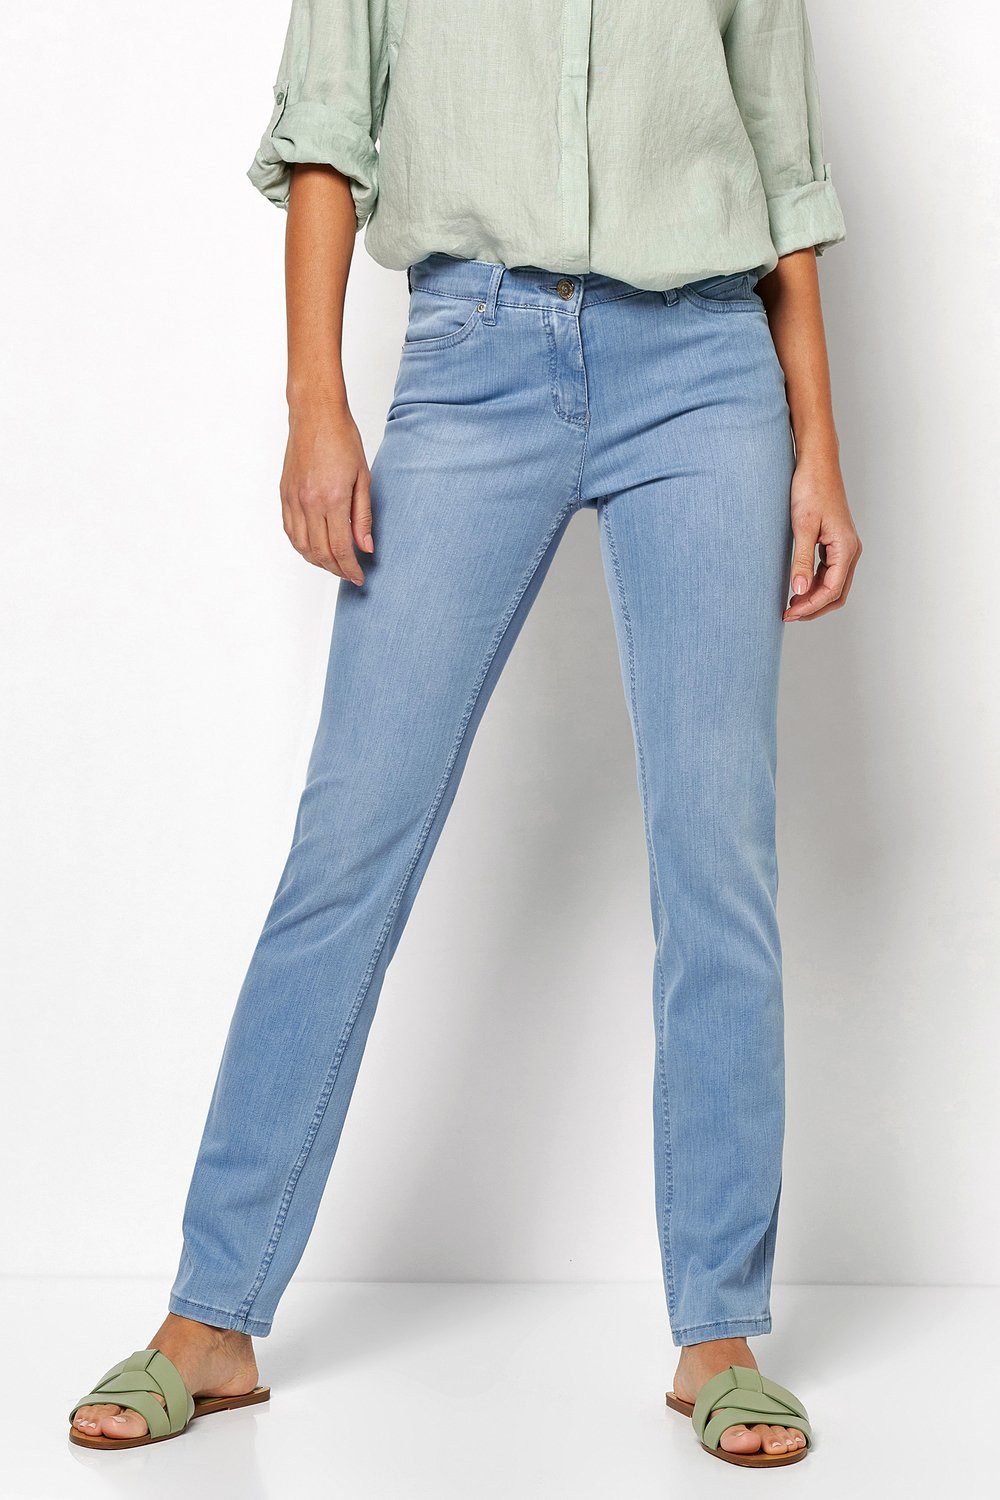 TONI Straight-Jeans Perfect Shape Straight mit Gesäßtaschen mit aufwendiger Verzierung